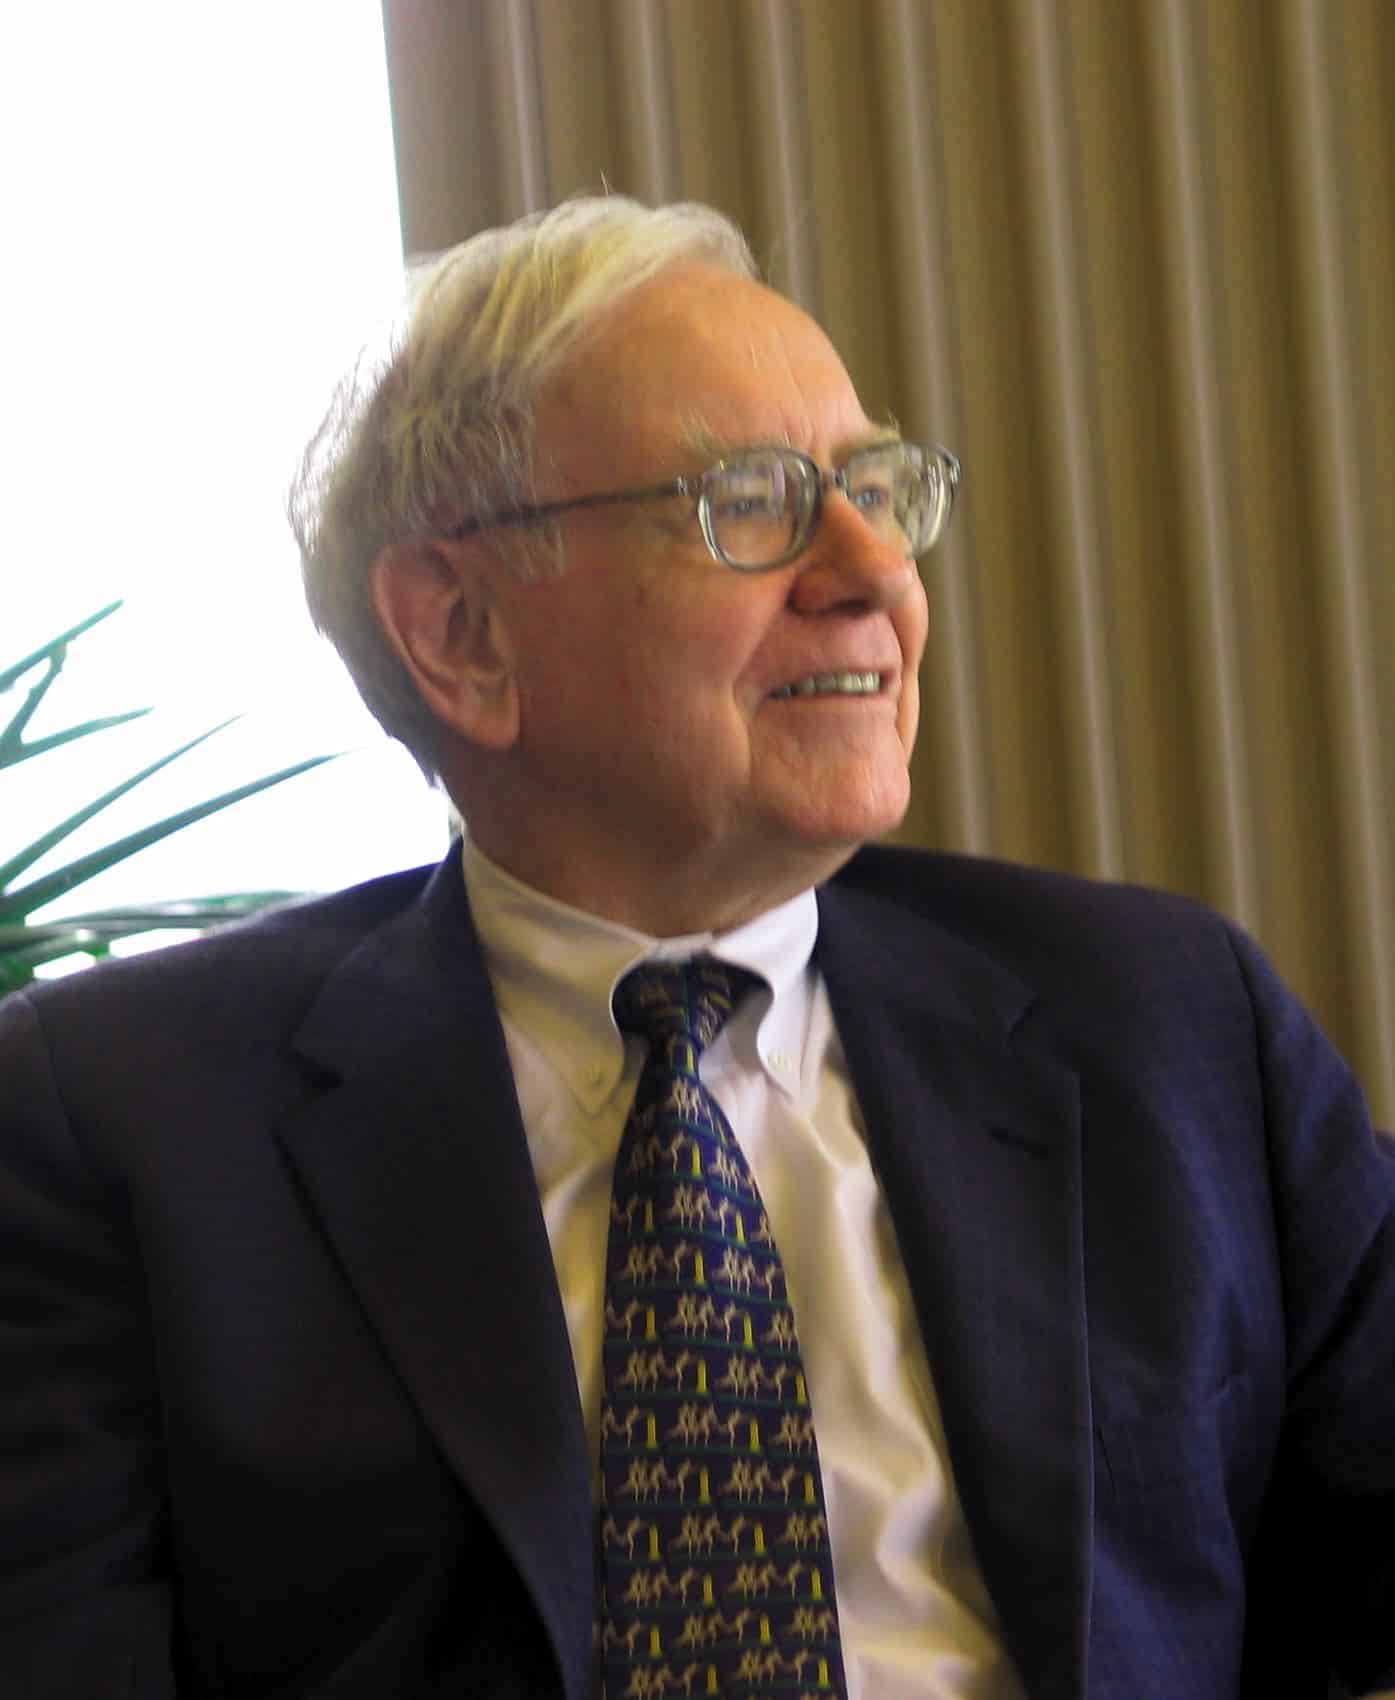 Book That Changed Warren Buffet’s Life